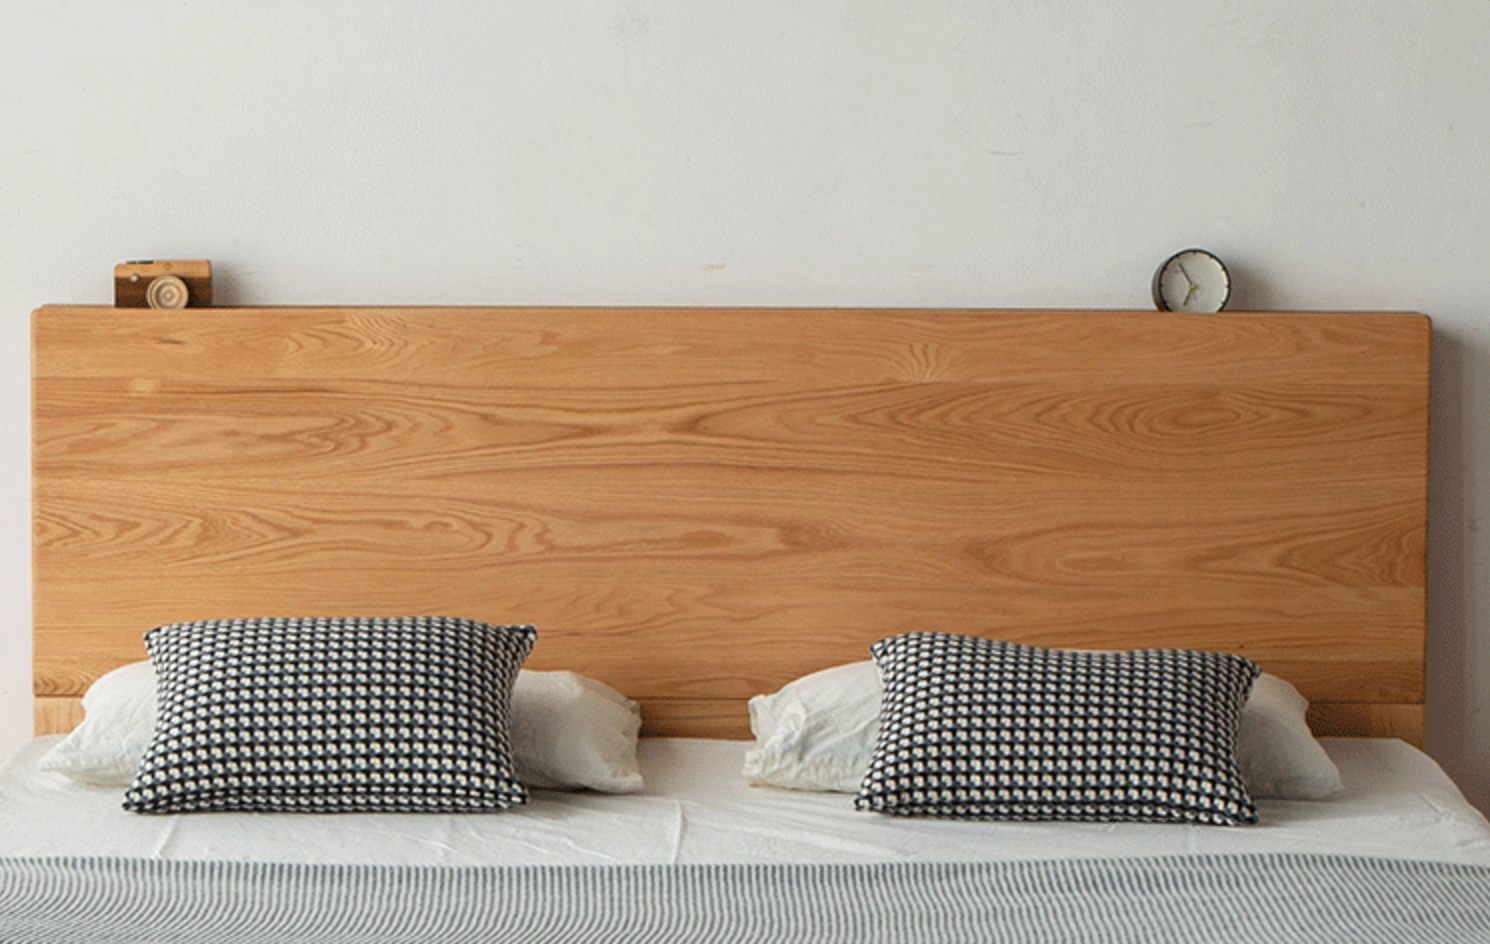 Bett aus Eichenholz mit Schublade, hydraulisches Bett mit Staufächern